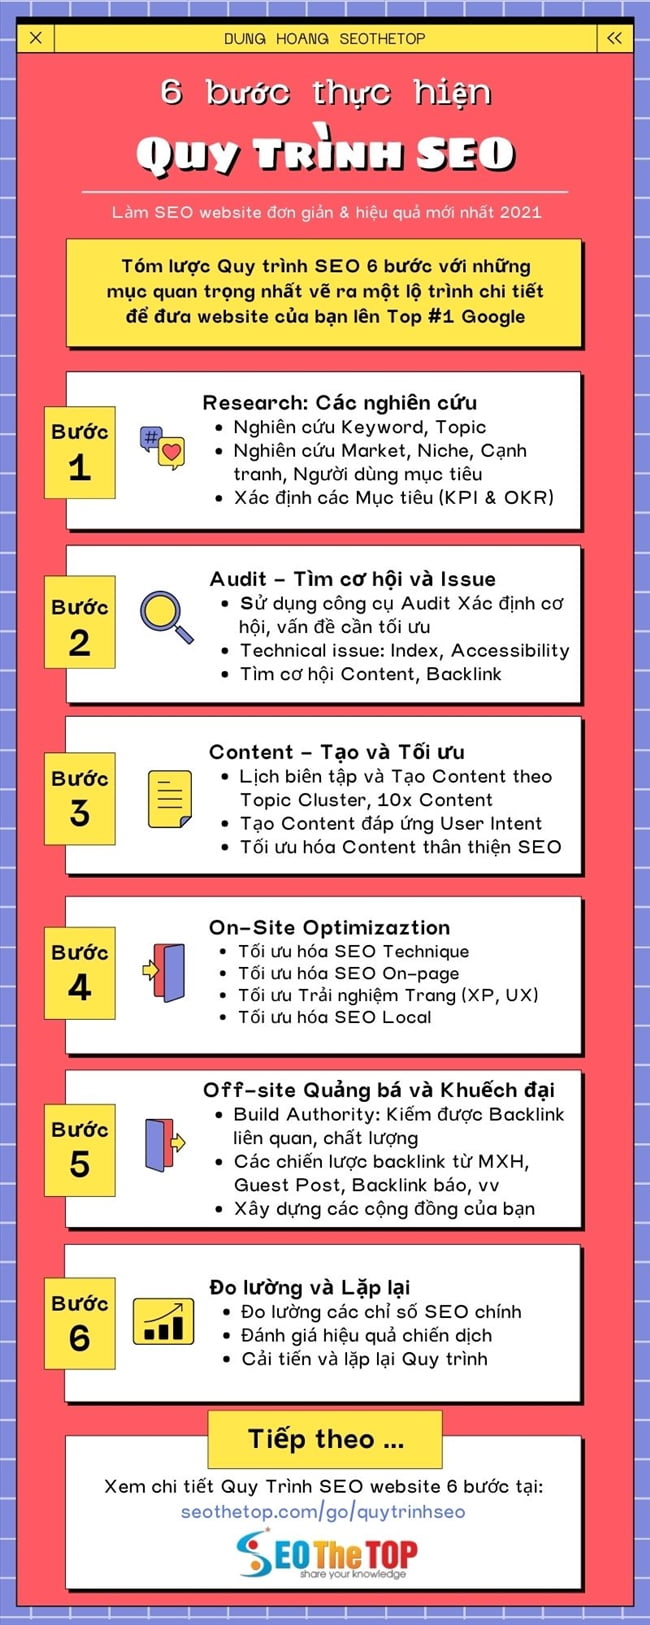 Infographic Quy trình SEO by Dung Hoang Chuẩn Web